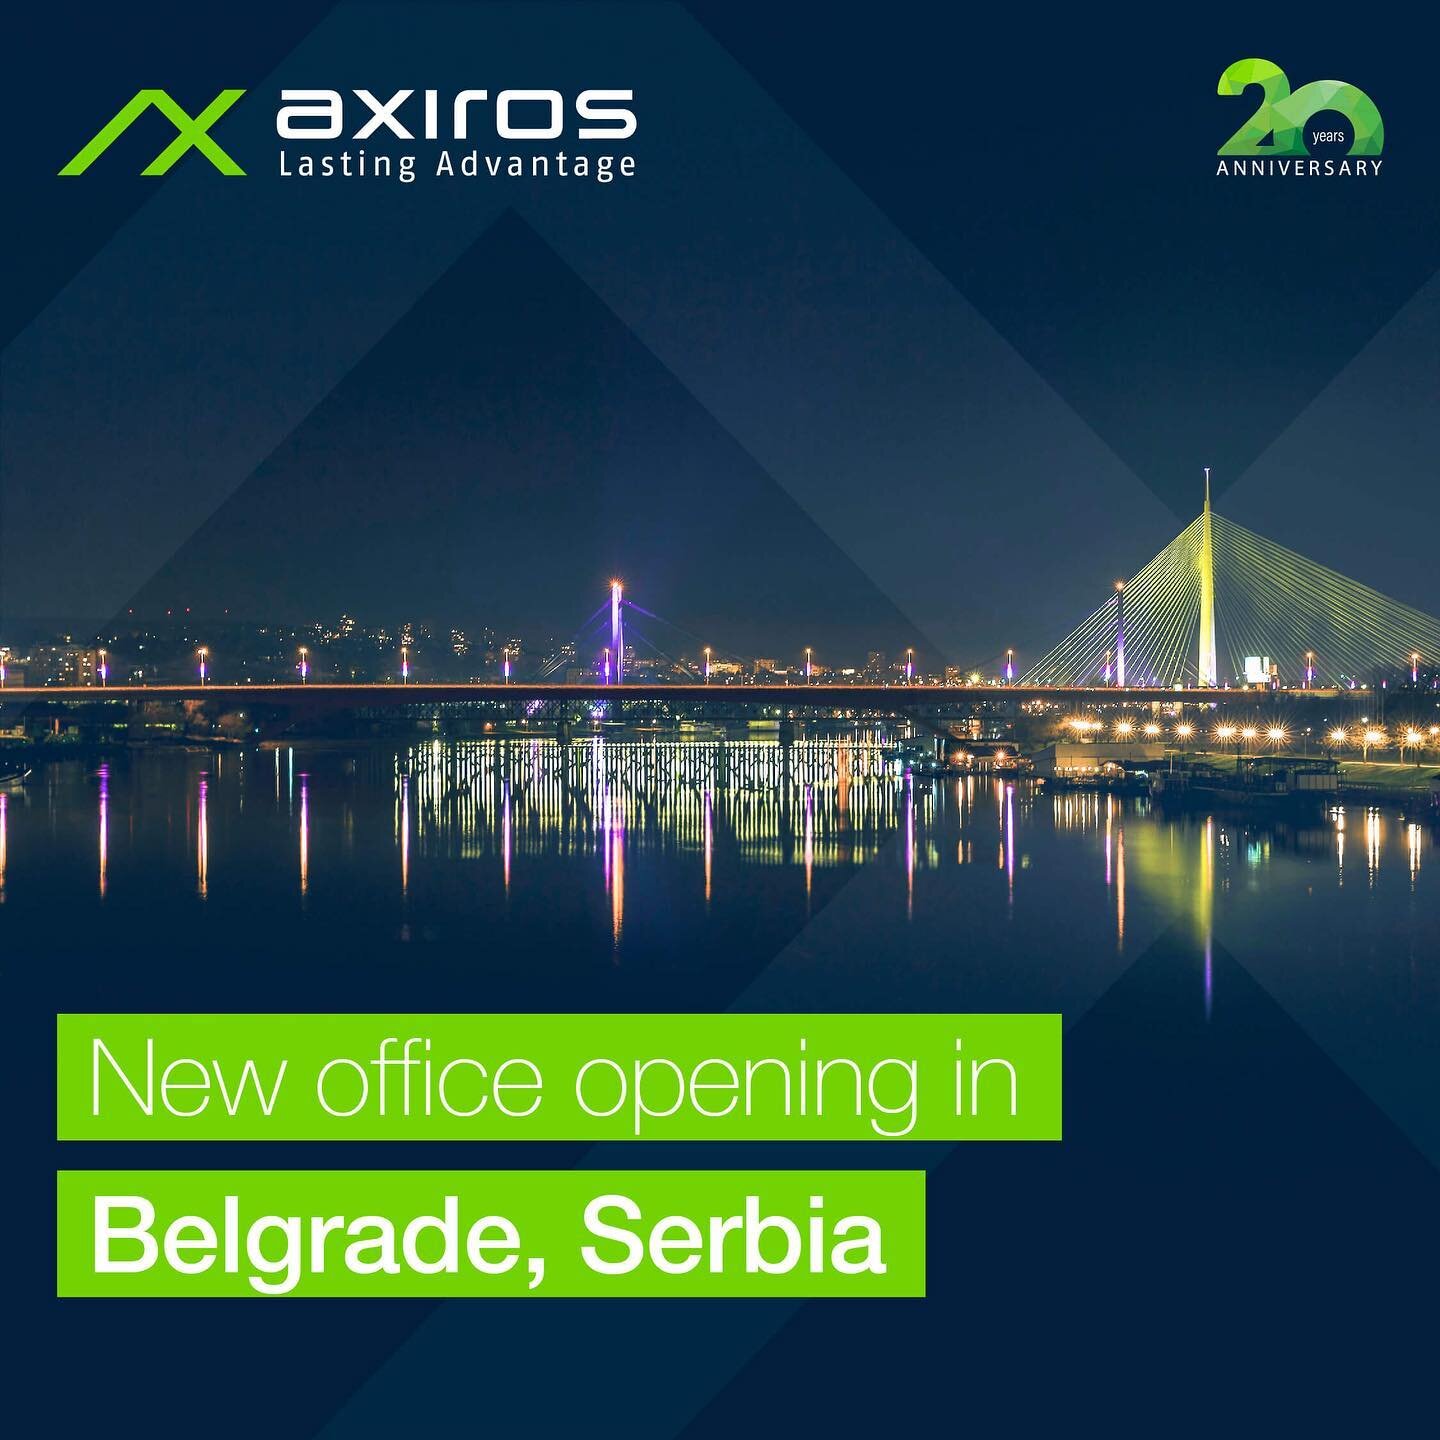 [Axiros الأخبار] Axiros ينمو مرة أخرى! 🌍🚀Axiros أنشأت مكتبا جديدا في العاصمة الصربية بلغراد كجزء من التوسع العالمي المستمر للشركة. ➡️ يمكنك قراءة الإعلان الكامل - الرابط في السيرة الذاتية! نريد أن نشكر الجميع